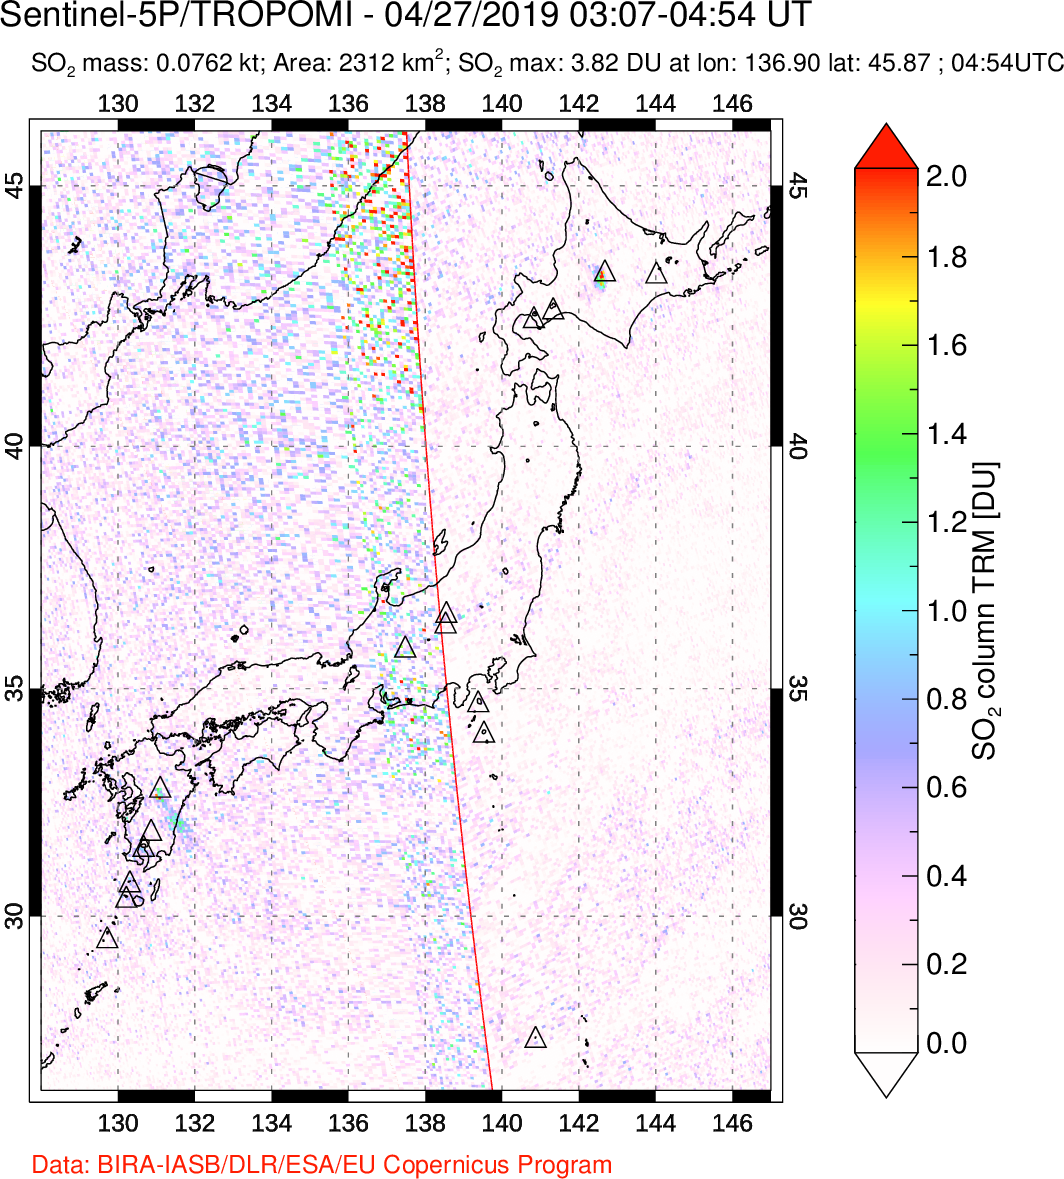 A sulfur dioxide image over Japan on Apr 27, 2019.